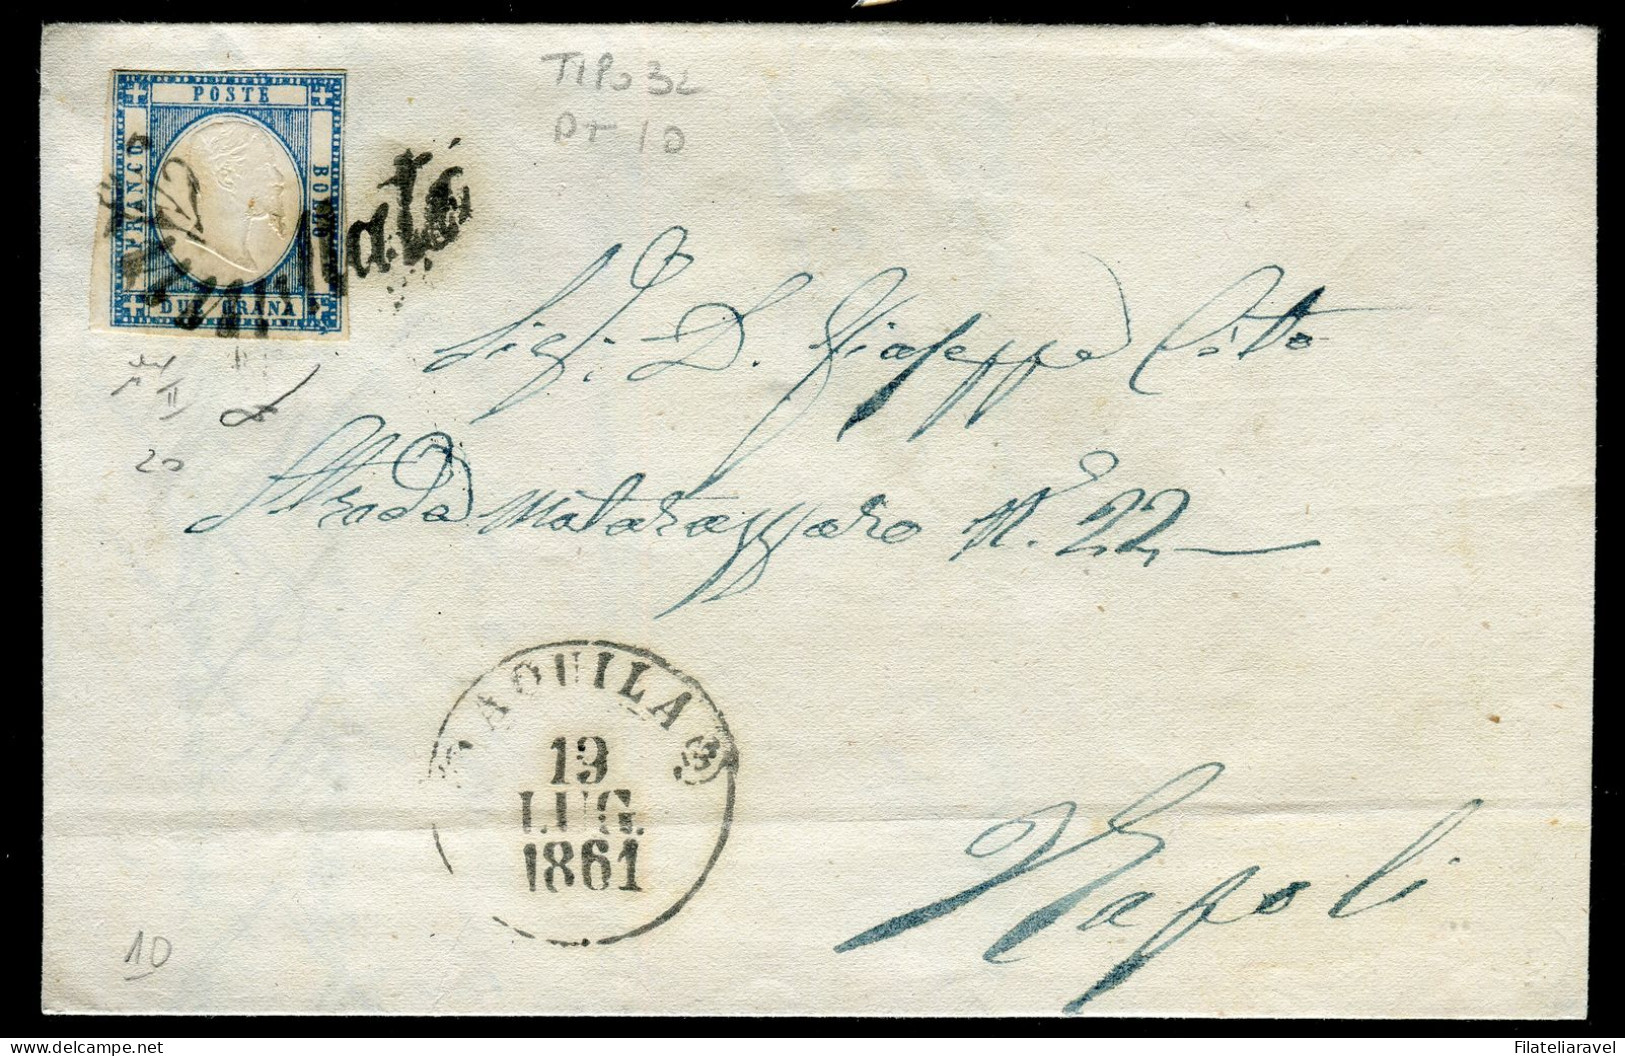 Ltr 1861 - Prov. Napoletane - Lettera Da Aquila A Napoli, 2 Gr Azzurro Chiaro (20 ) Svolazzo Tipo 32 Punti 10, Cert.Vies - Naples